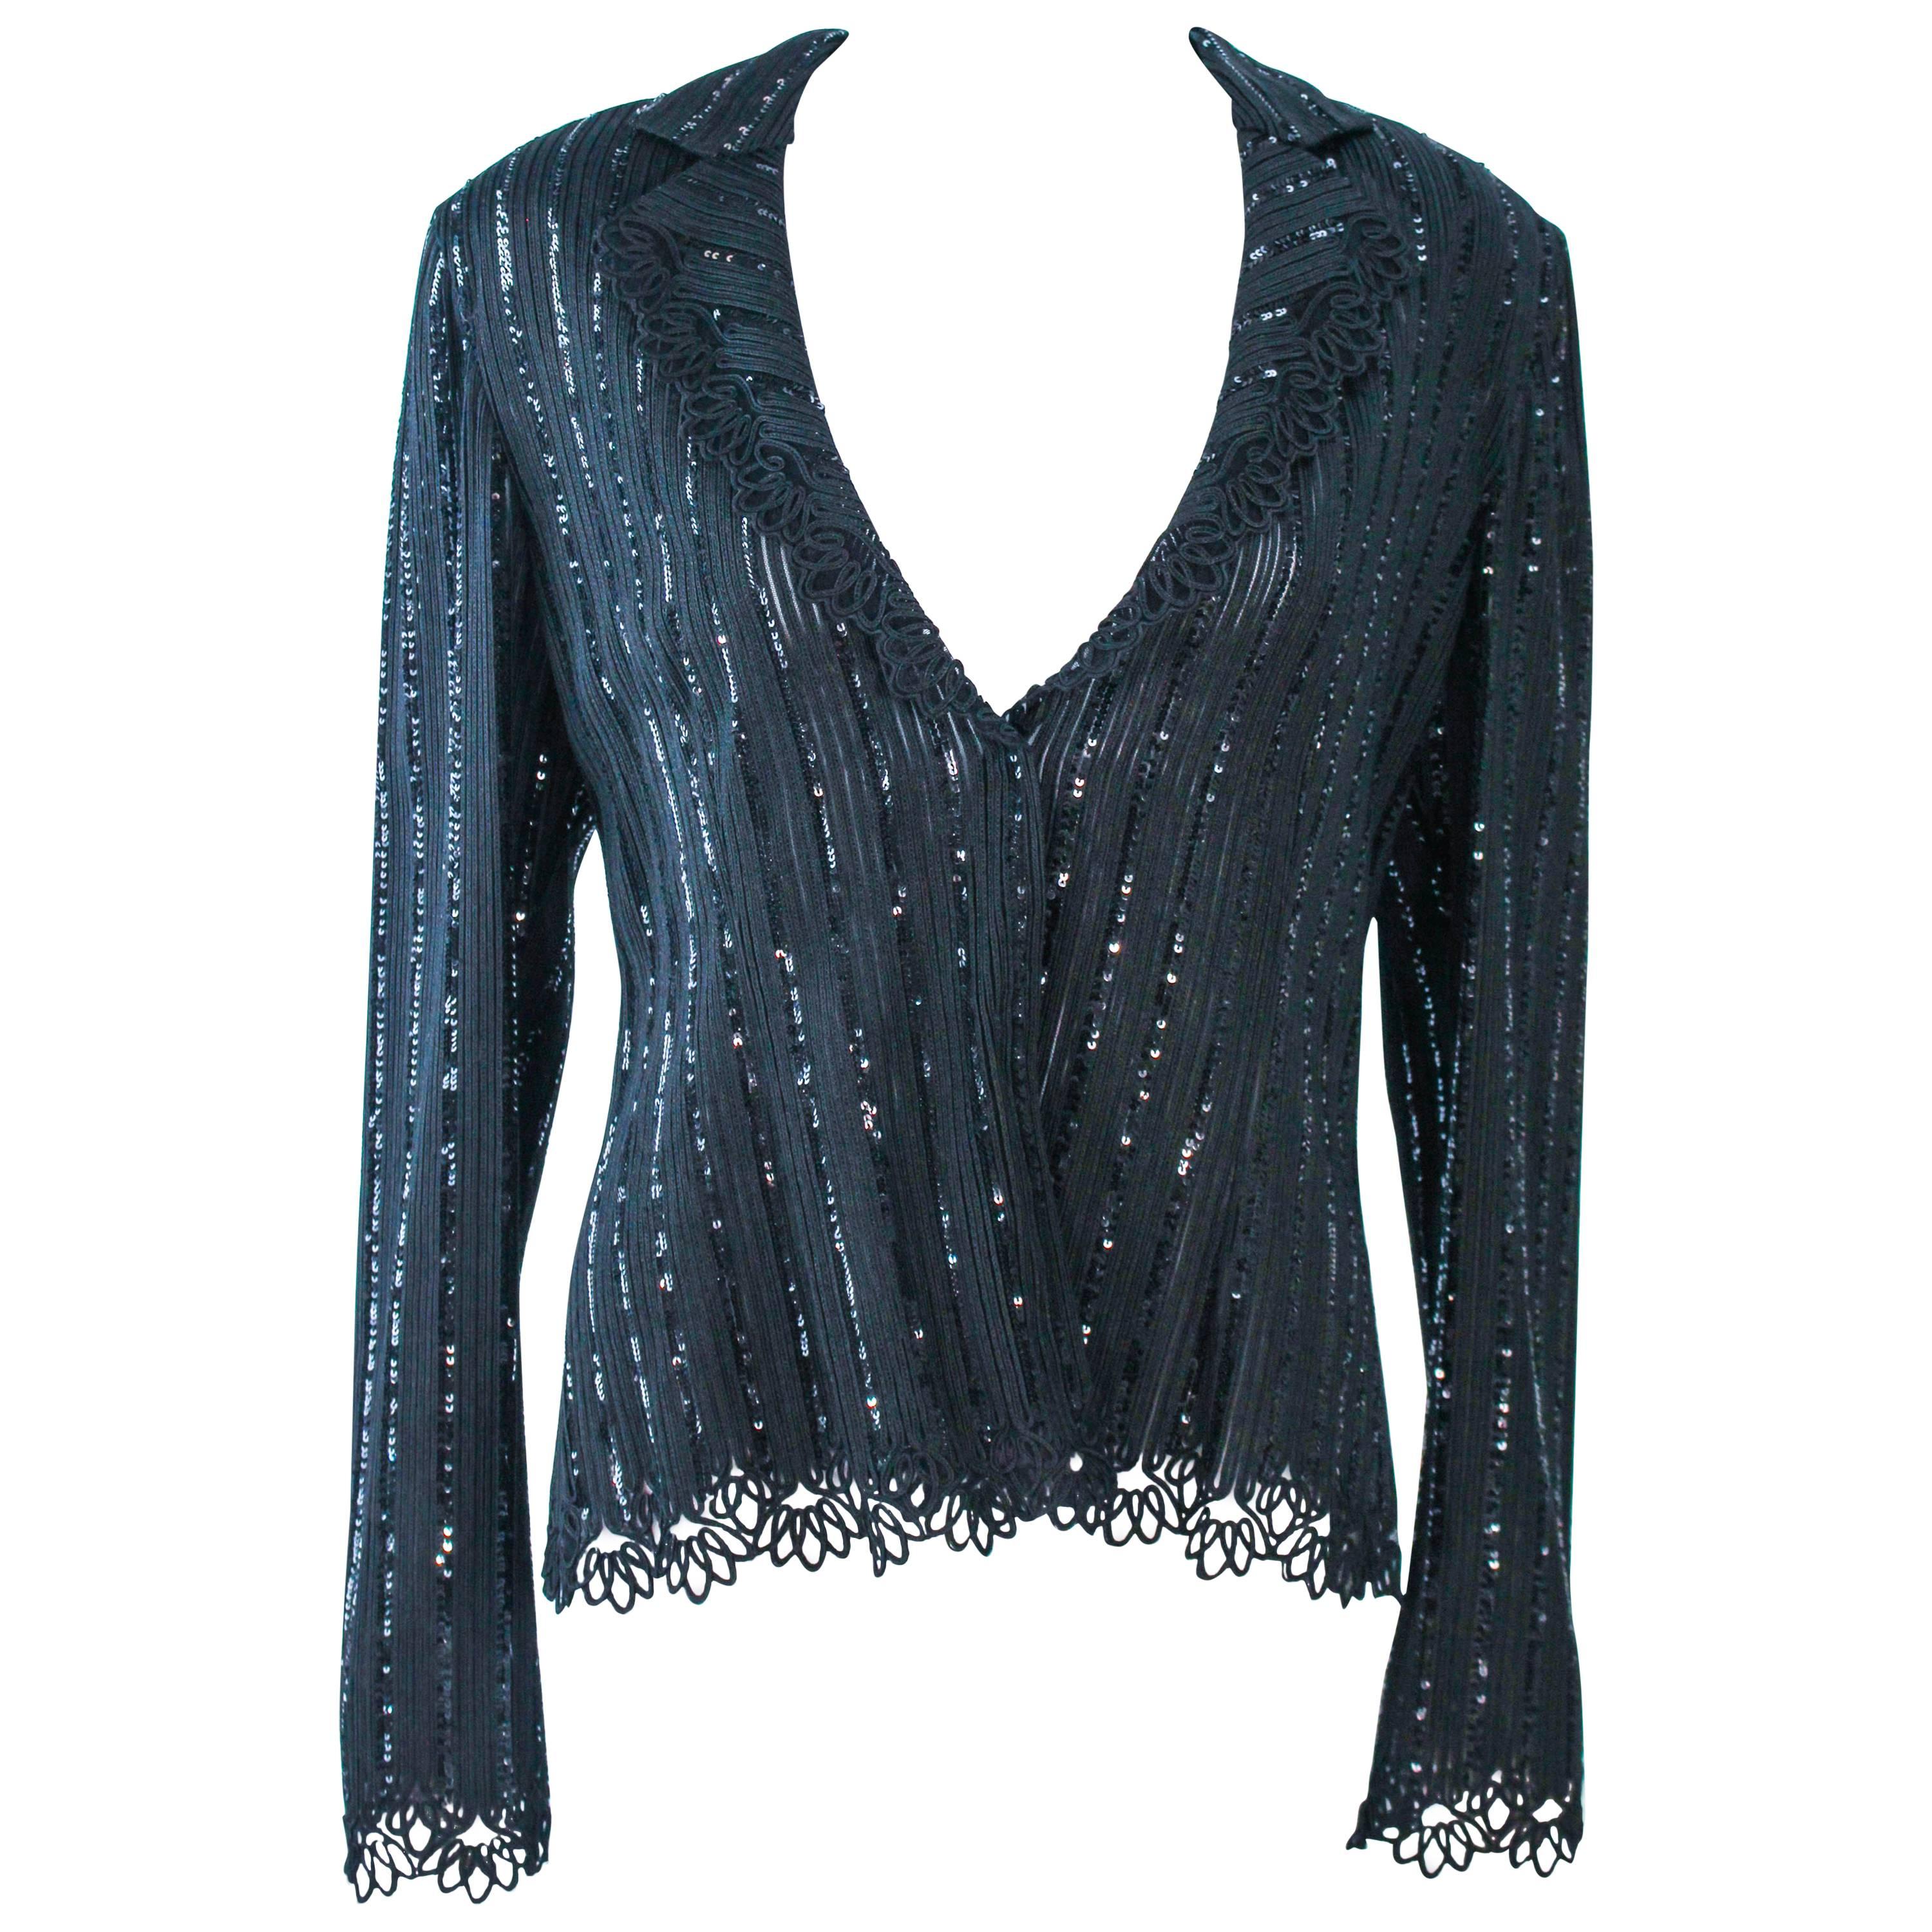 GIORGIO ARMANI Black Sequin Knit with Lace Sweater Size 48